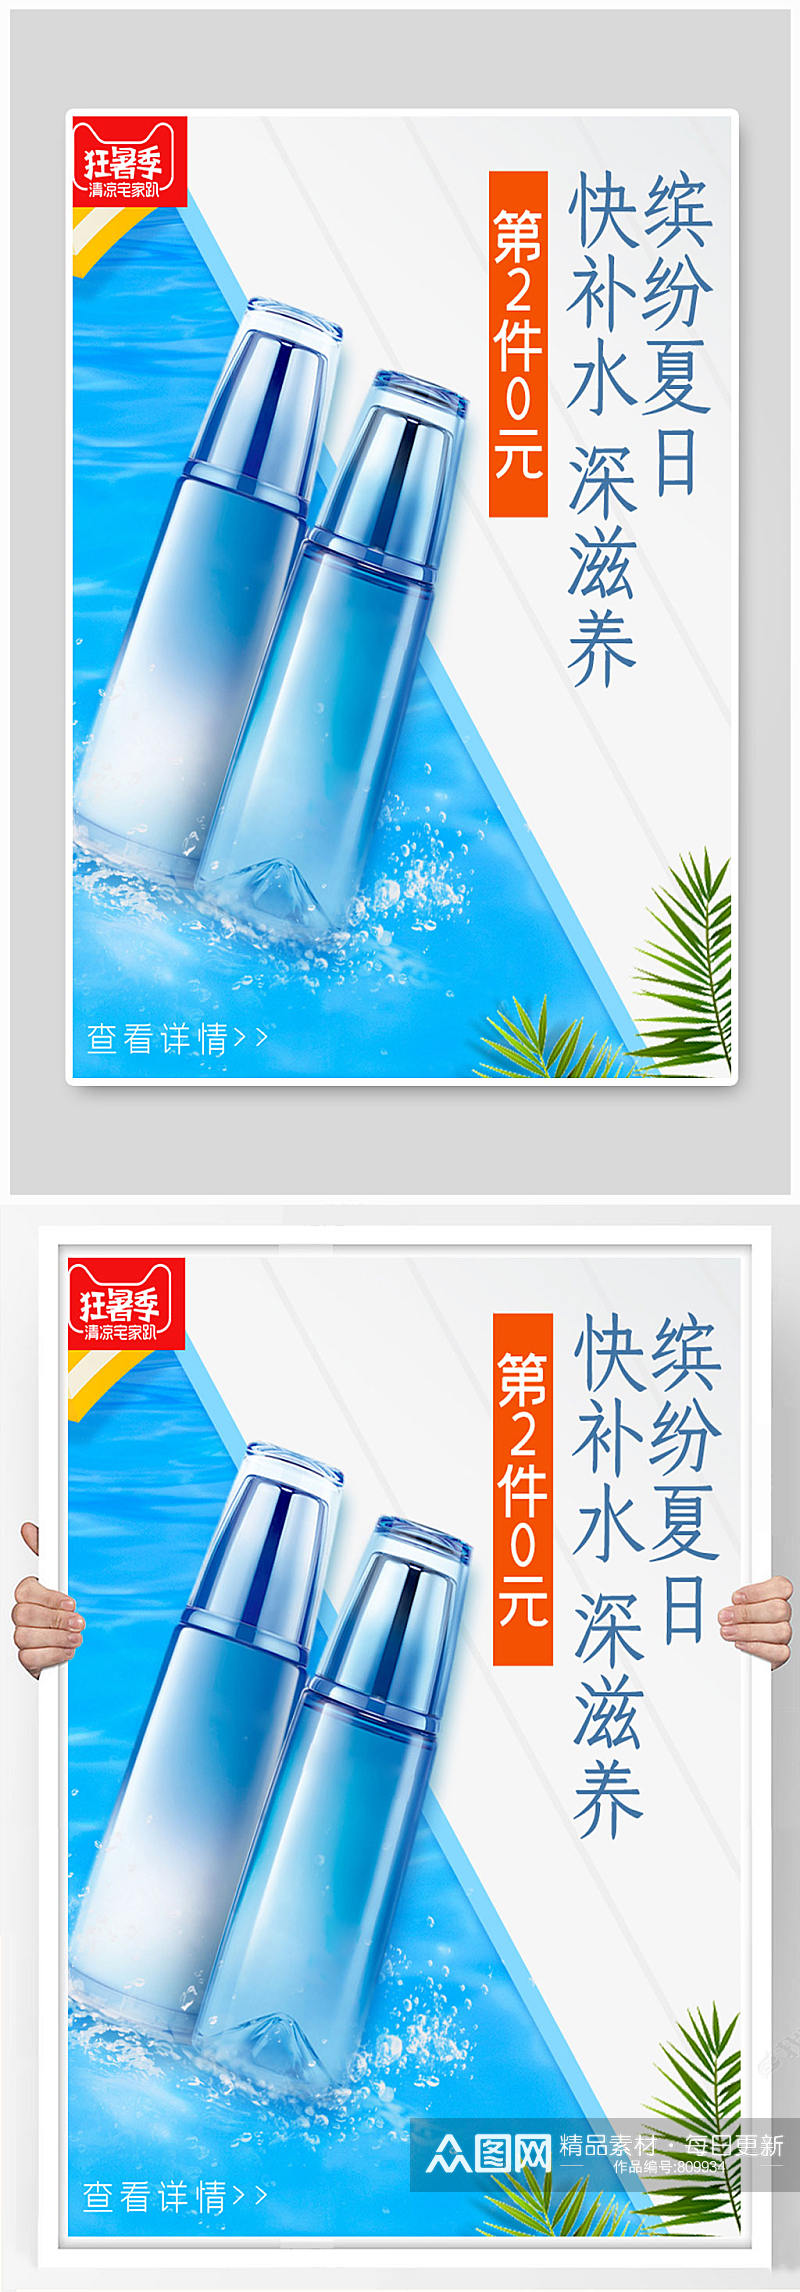 化妆品海报设计水元素素材